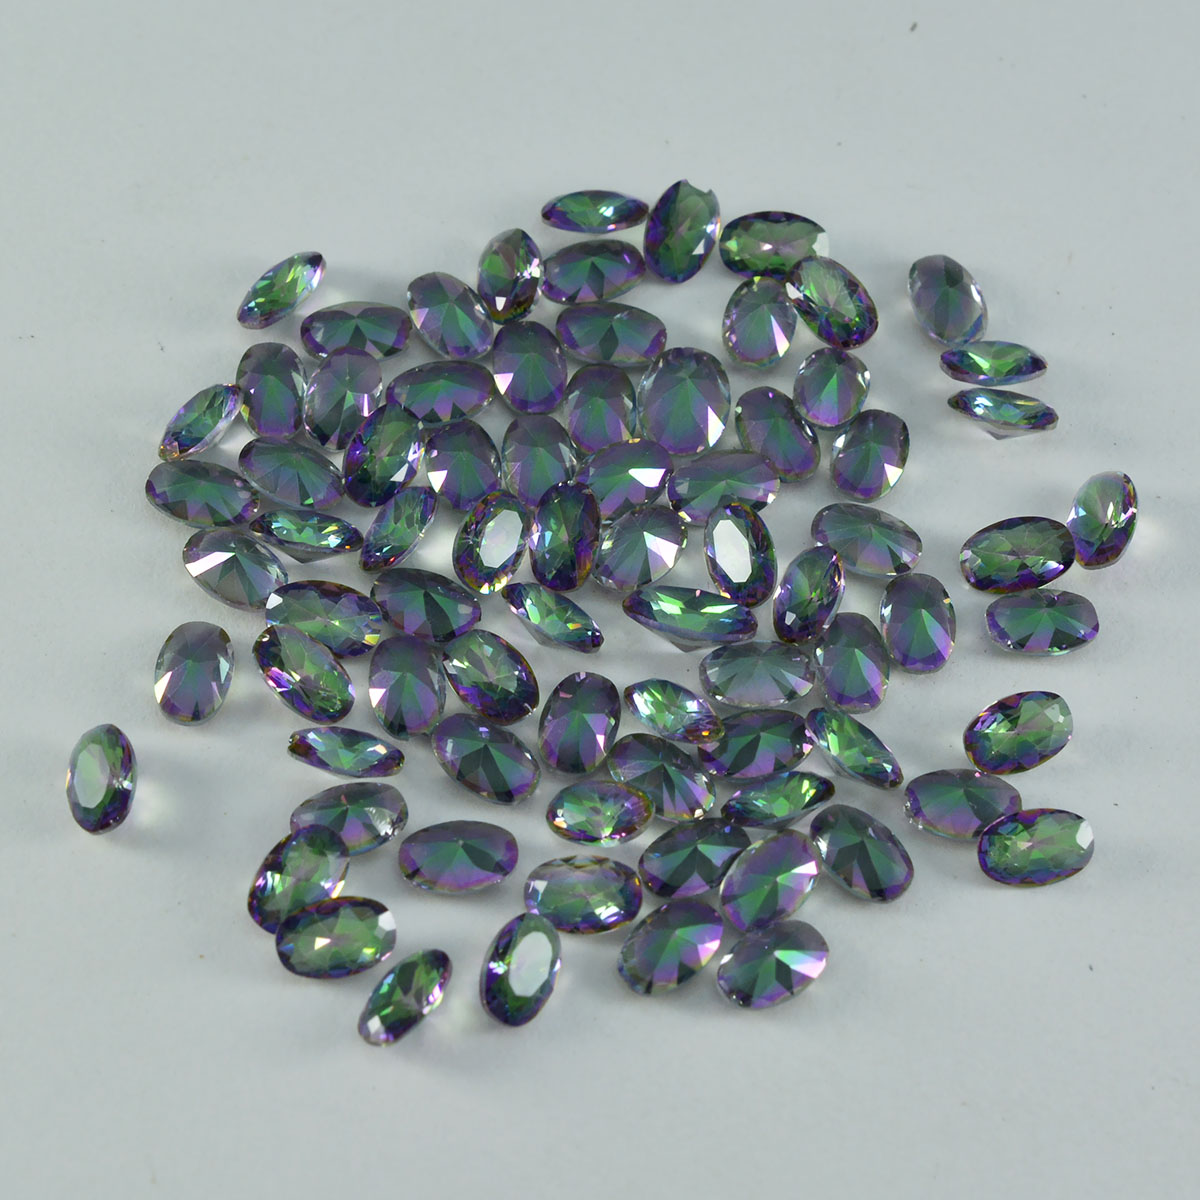 riyogems 1 шт., многоцветный мистический кварц, ограненный 4x6 мм, овальной формы, качество A1, россыпь драгоценных камней